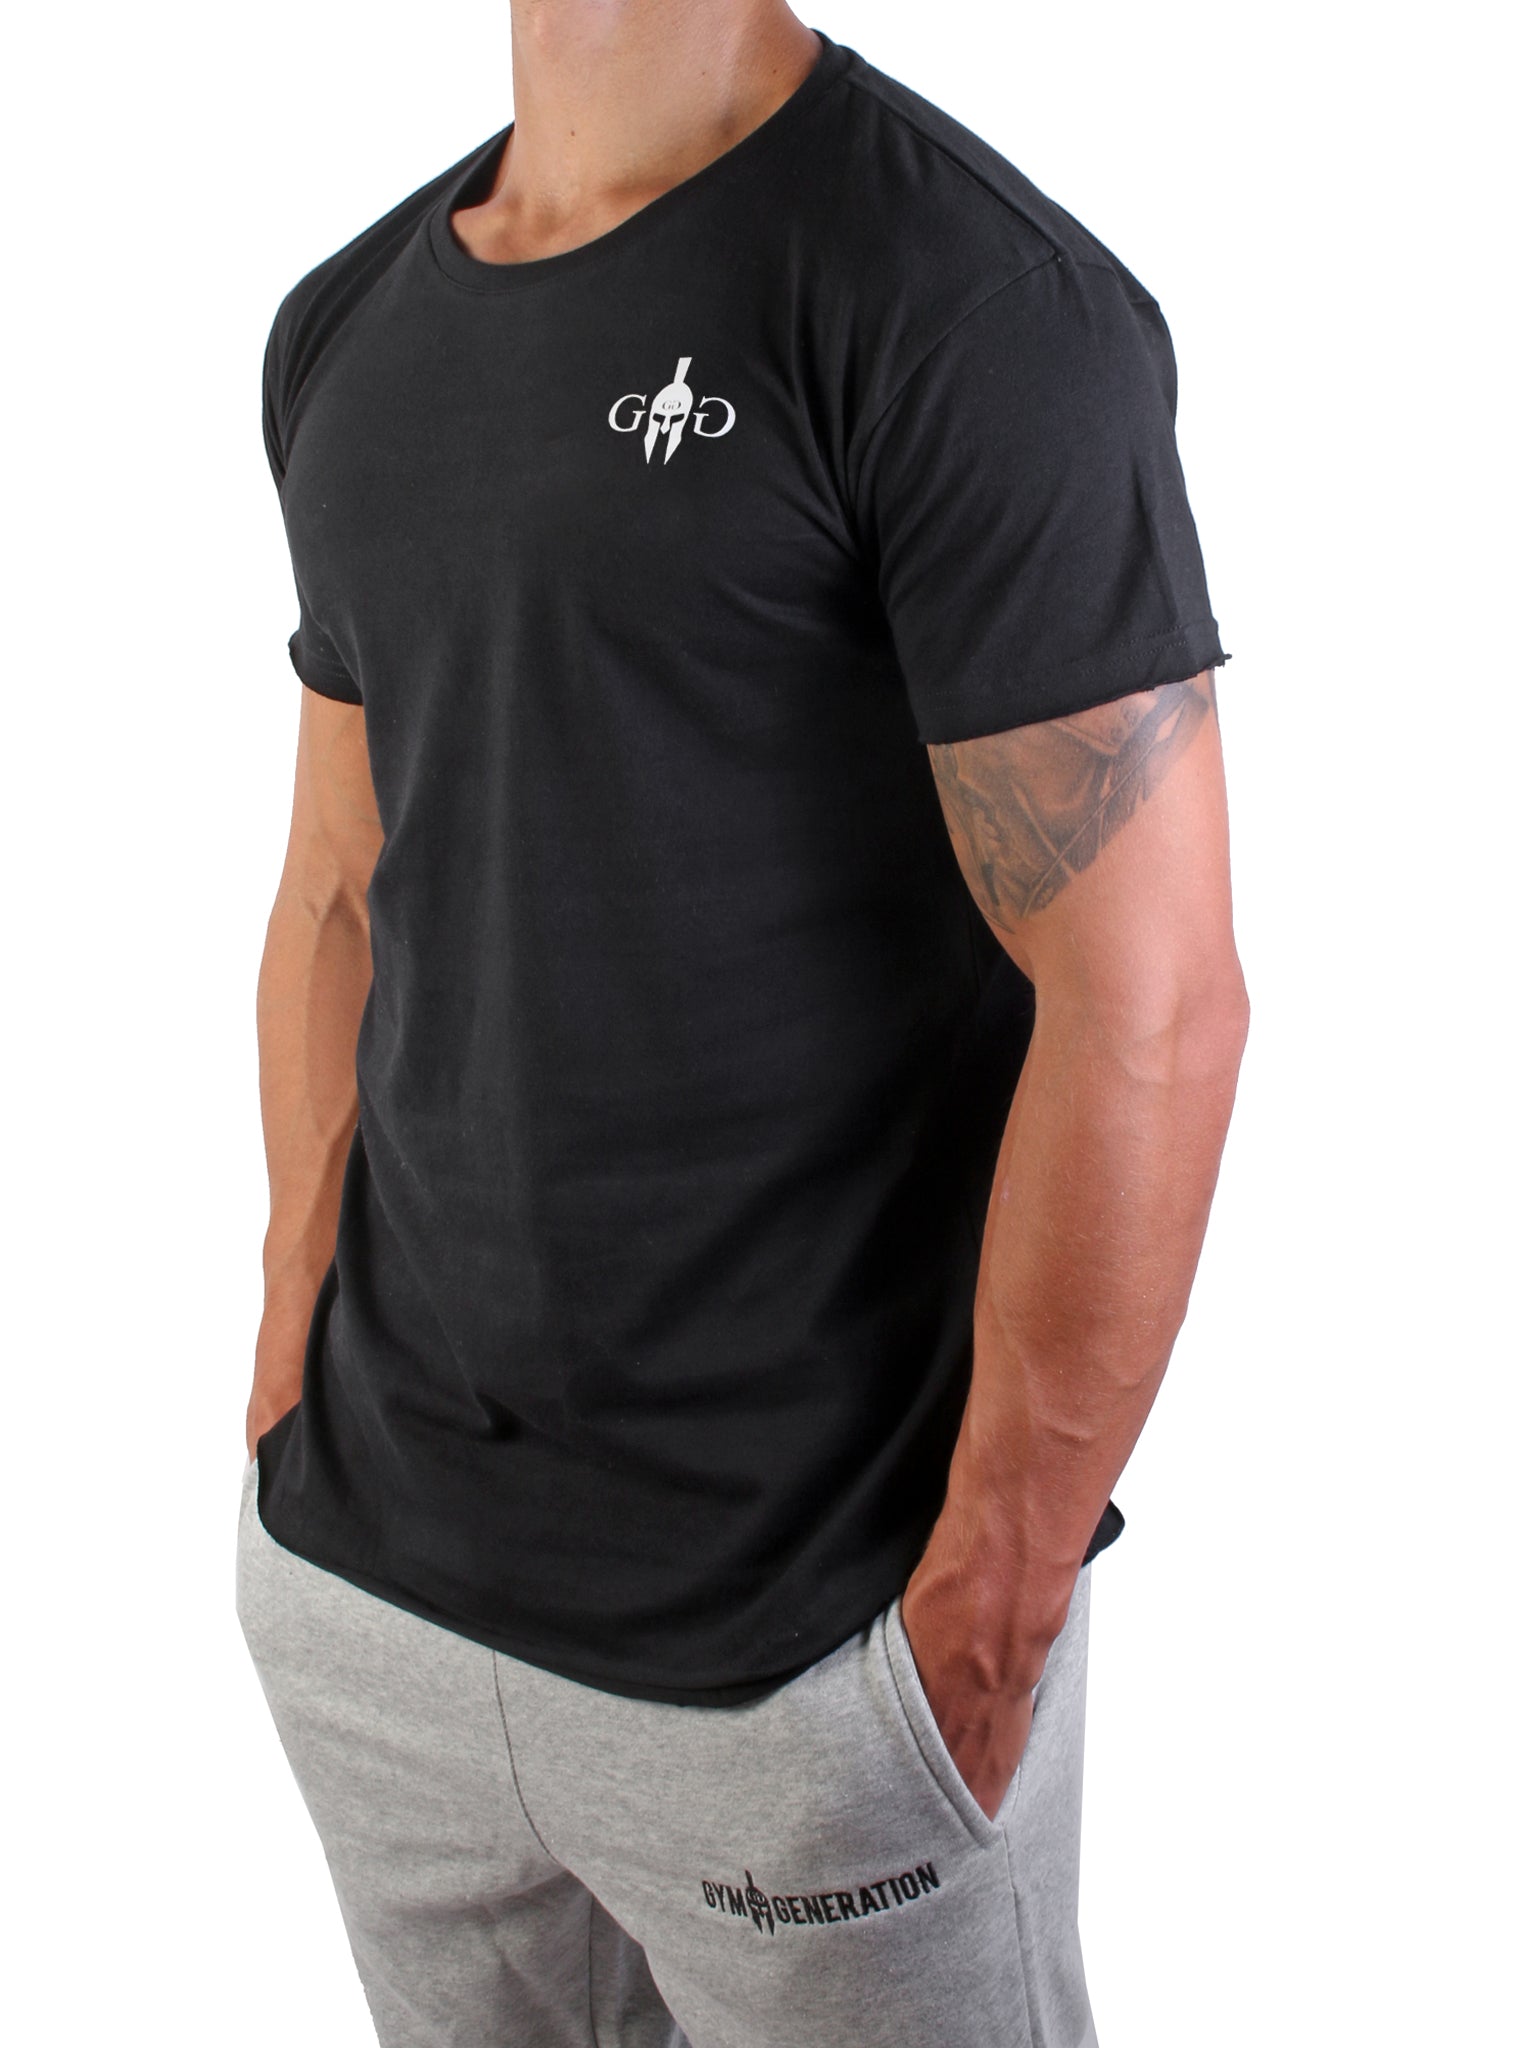 Stilvolles schwarzes T-Shirt mit gerollten Ärmeln und abgerundetem Saum, ideal für moderne Looks.